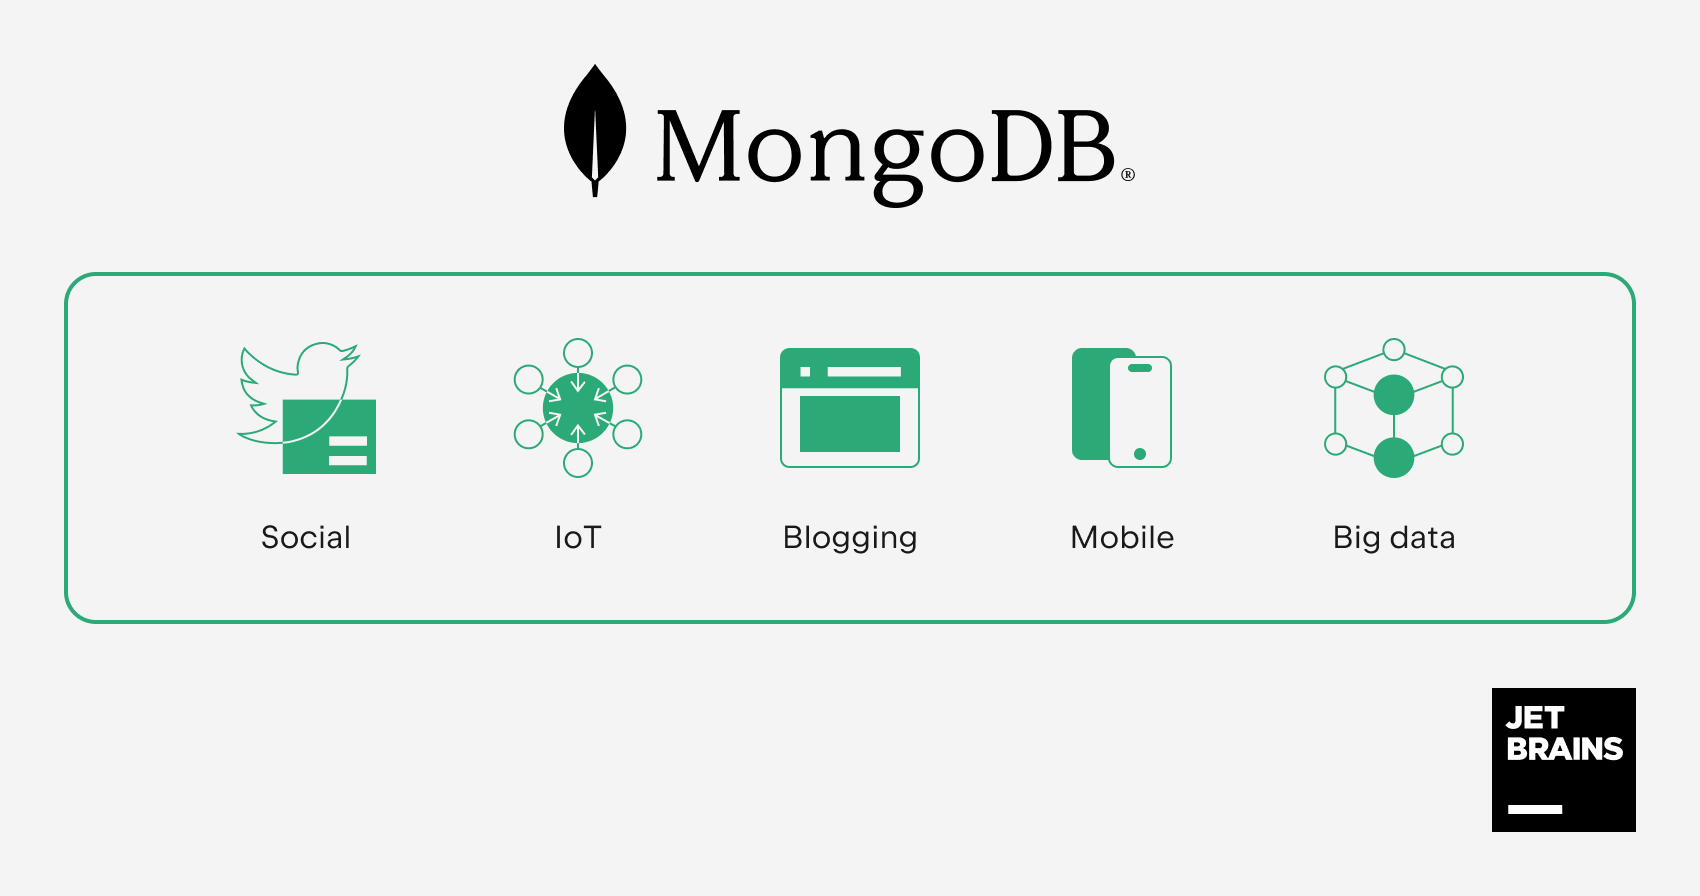 Usages of MongoDB